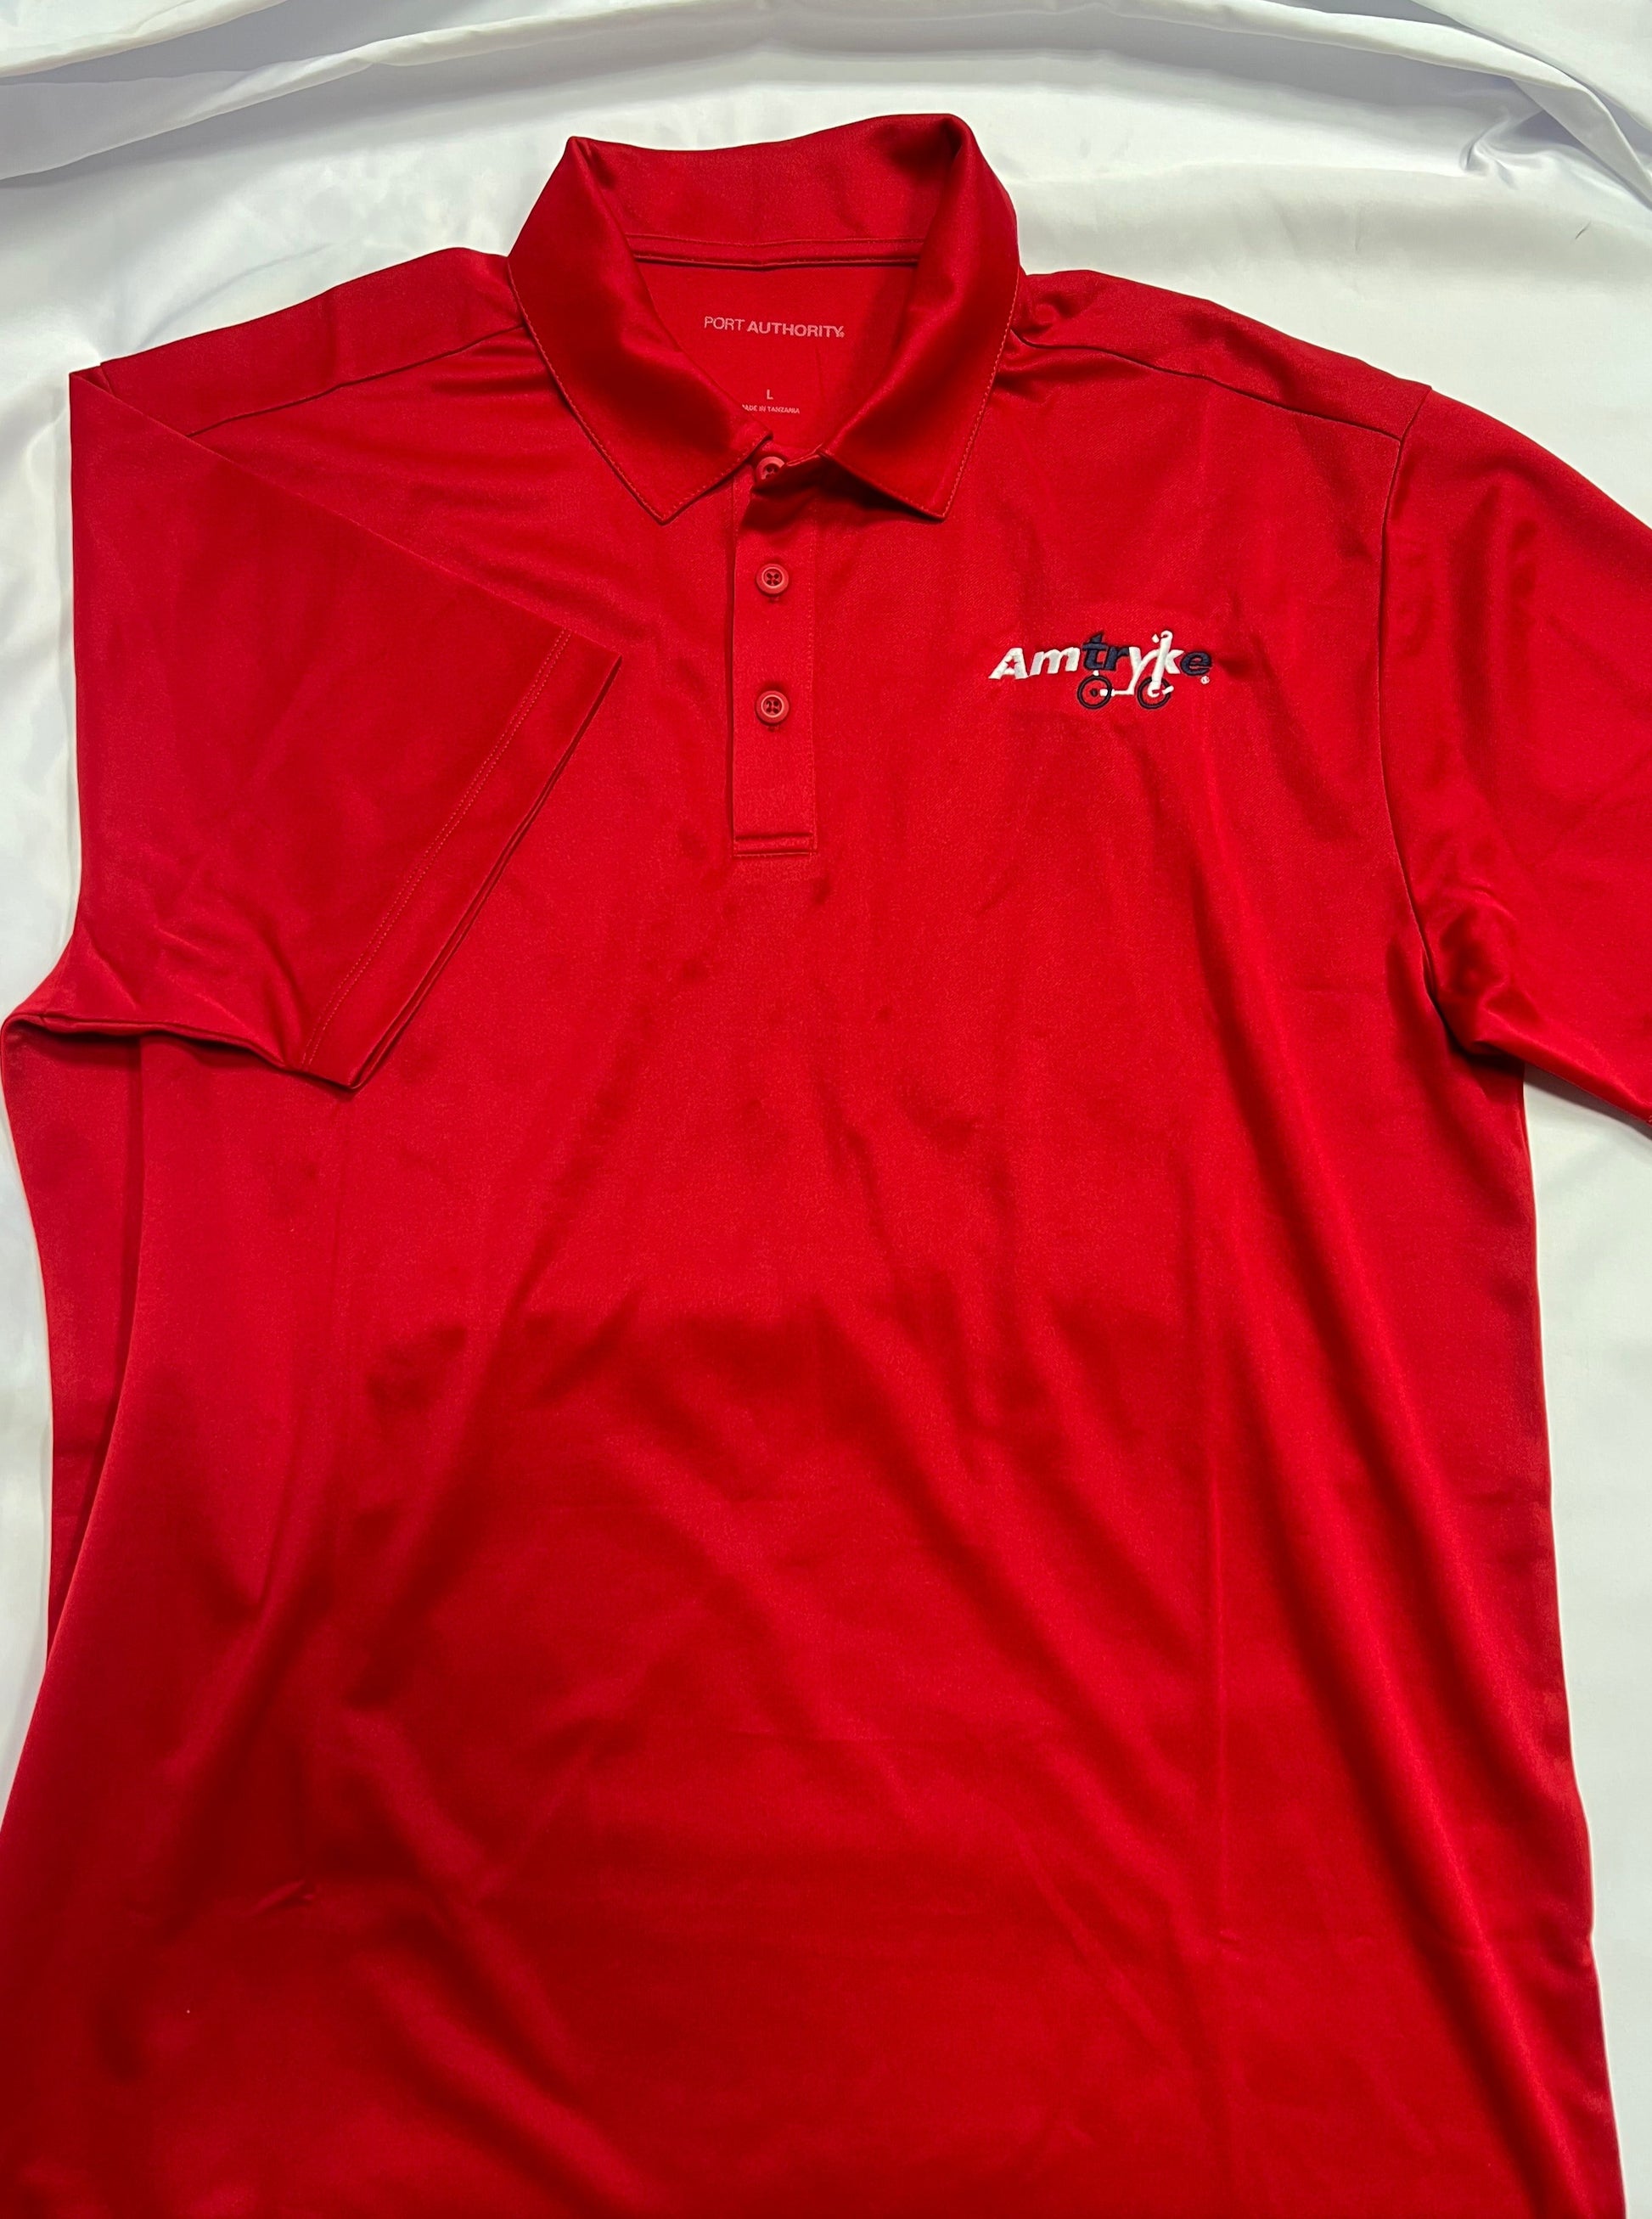 short sleeve polo style shirt with Amtryke logo on left 